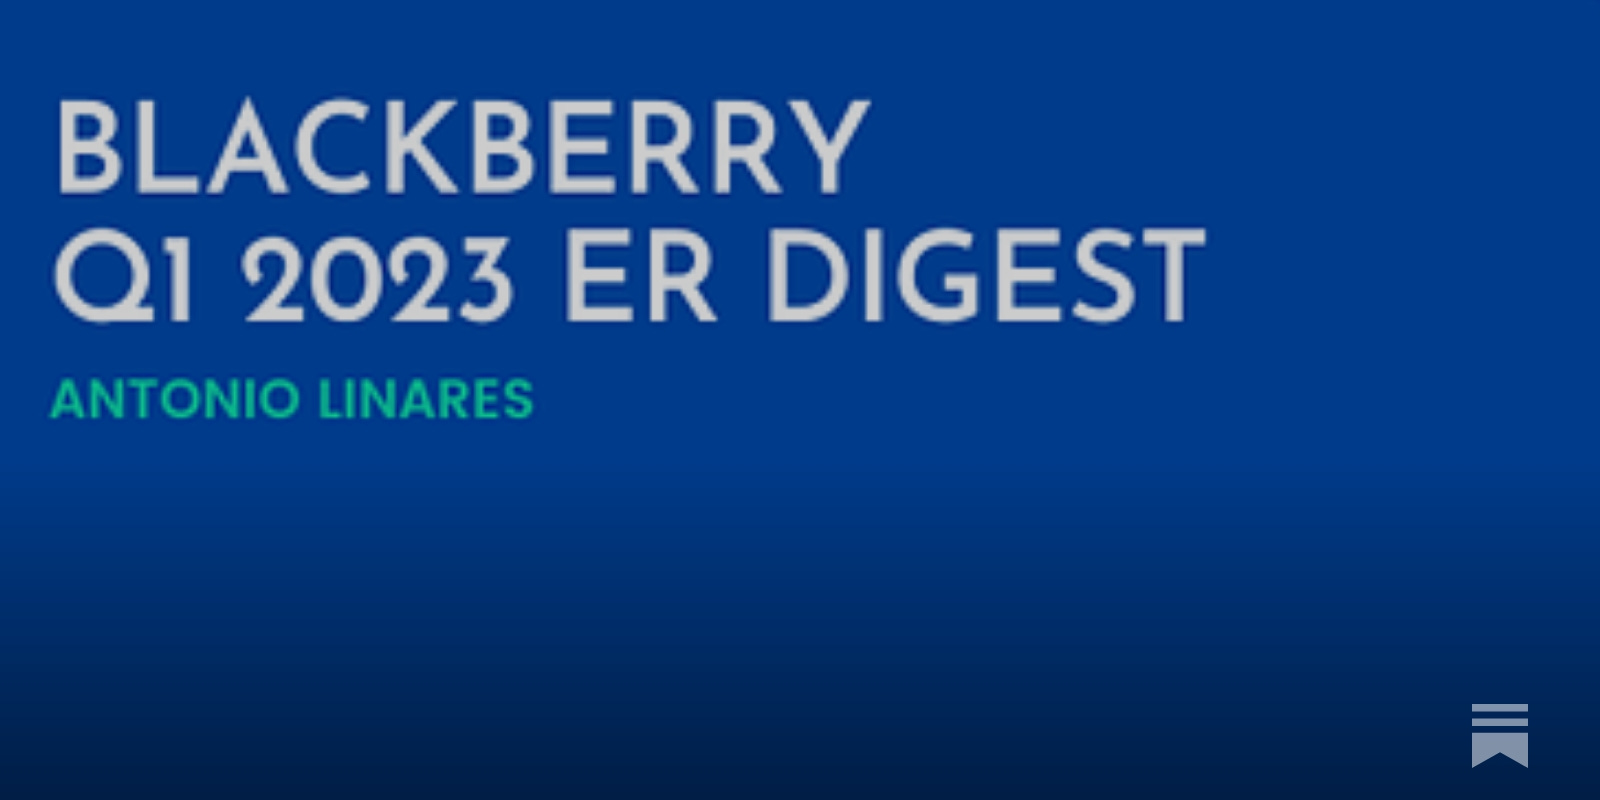 BlackBerry (2023) - Projected Figures